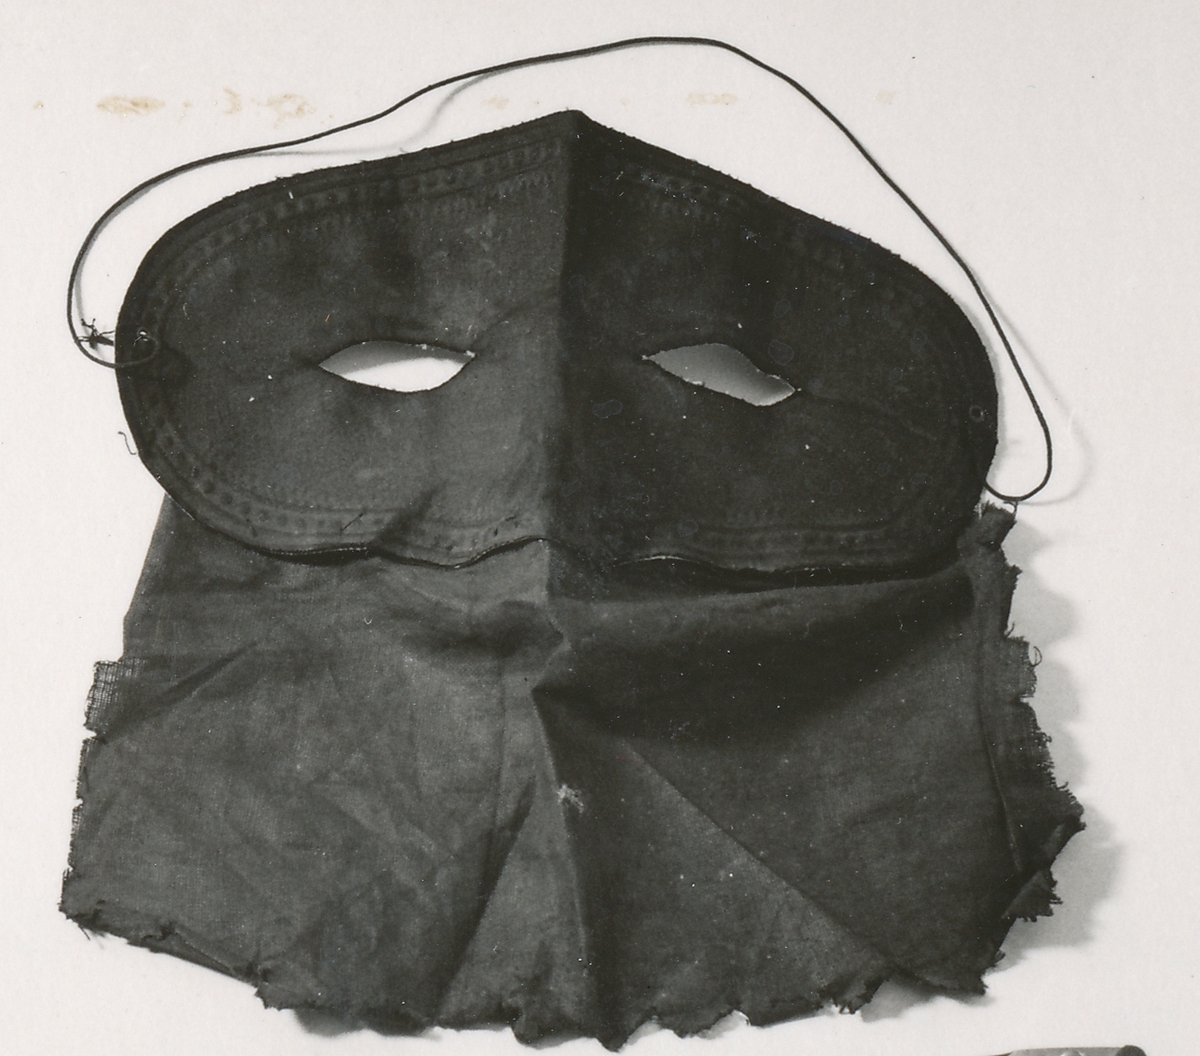 Dominomask av två hopsydda delar.

Den övre, som skulle täcka ögonen är svart på utsidan, på insidan vit. Det undre stycket är brunt och hängde fritt över näsa och mun. Masken togs på med ett tunt resårsnöre bakom nacken. Masken användes vid ett rån mot postkupén på sträckan Simrishamn - Malmö den 18 mars 1907. 
Vaktbetjänten i kupén Johannes Almén blev sårad av tre revolverkulor. Kulorna satt kvar i Alméns huvud i 42 år, ända tills han avled år 1949 i en ålder av 87 år.